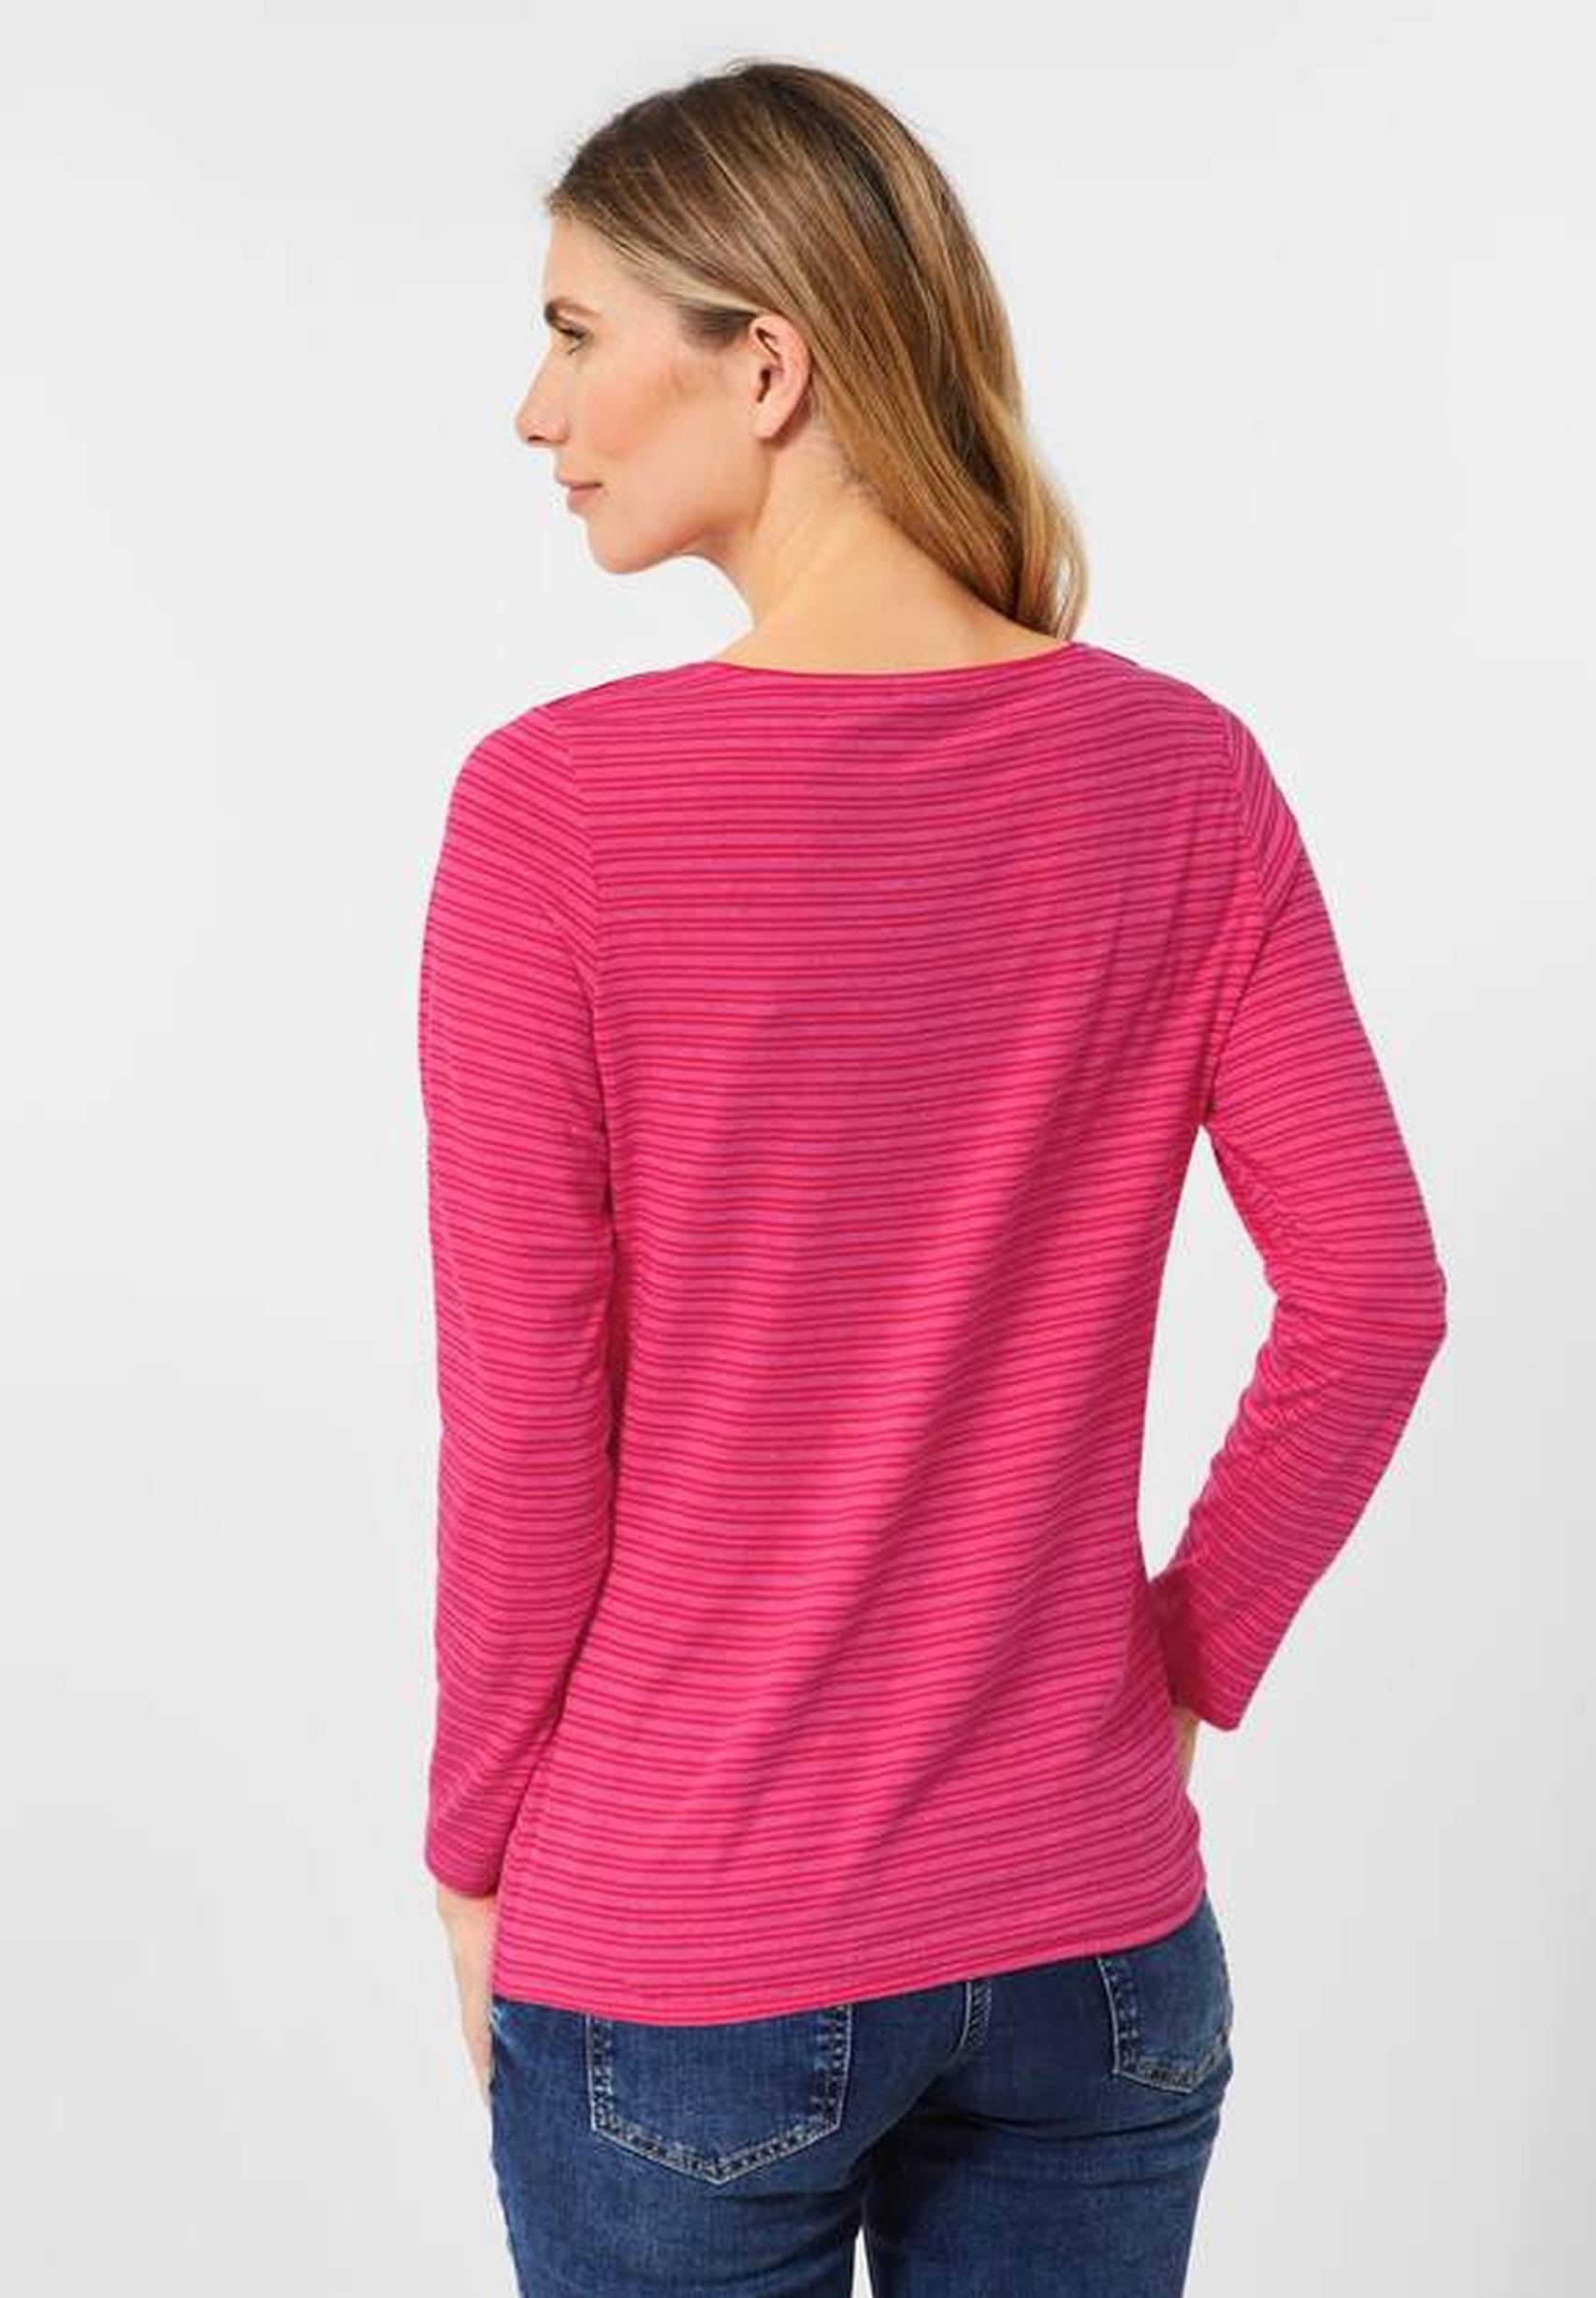 Modisches Shirt aus der Kollektion dynamic CECIL pink - 318613 in von